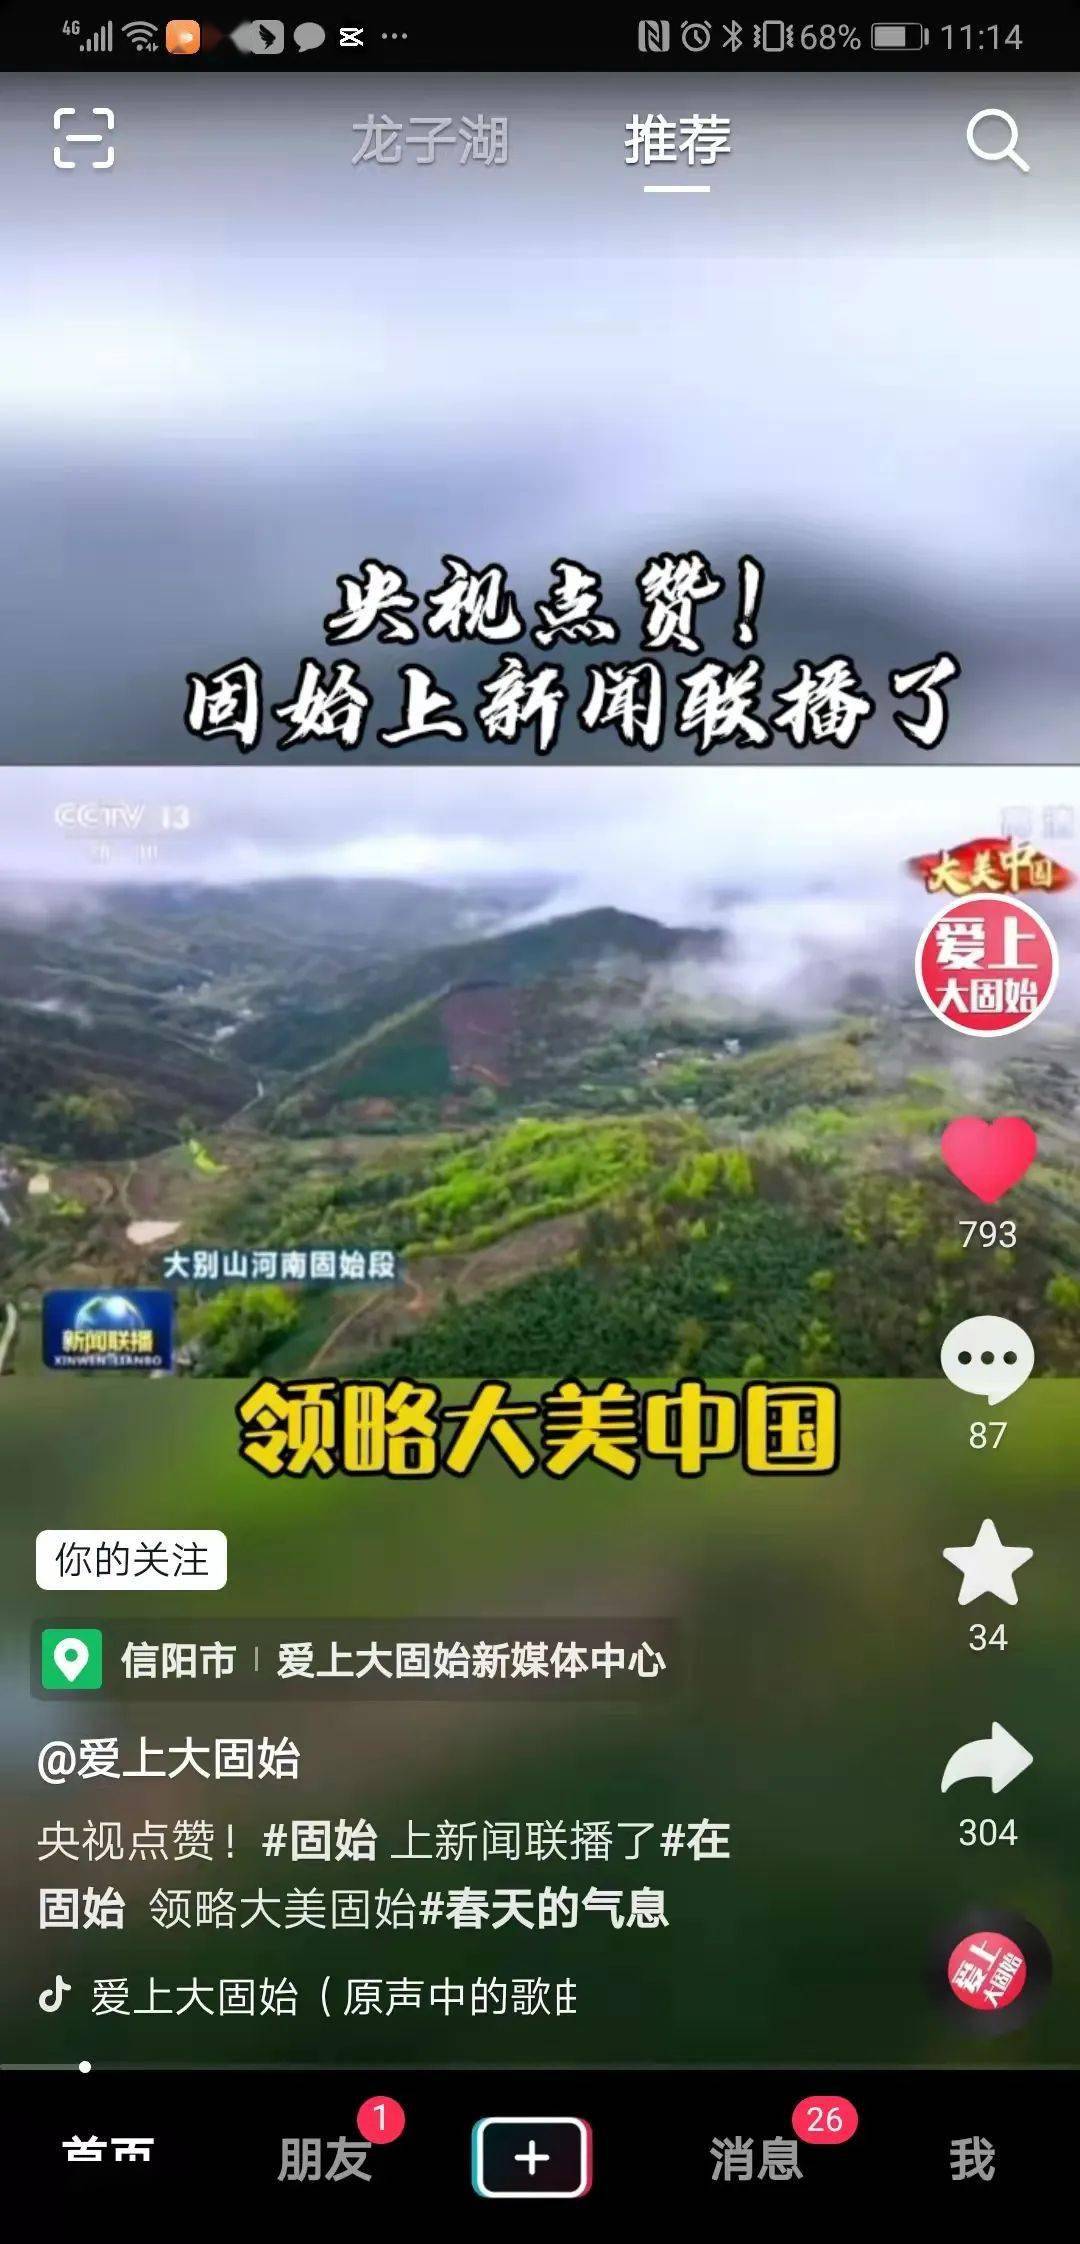 魅族手机下载新闻联播央视新闻app官方下载